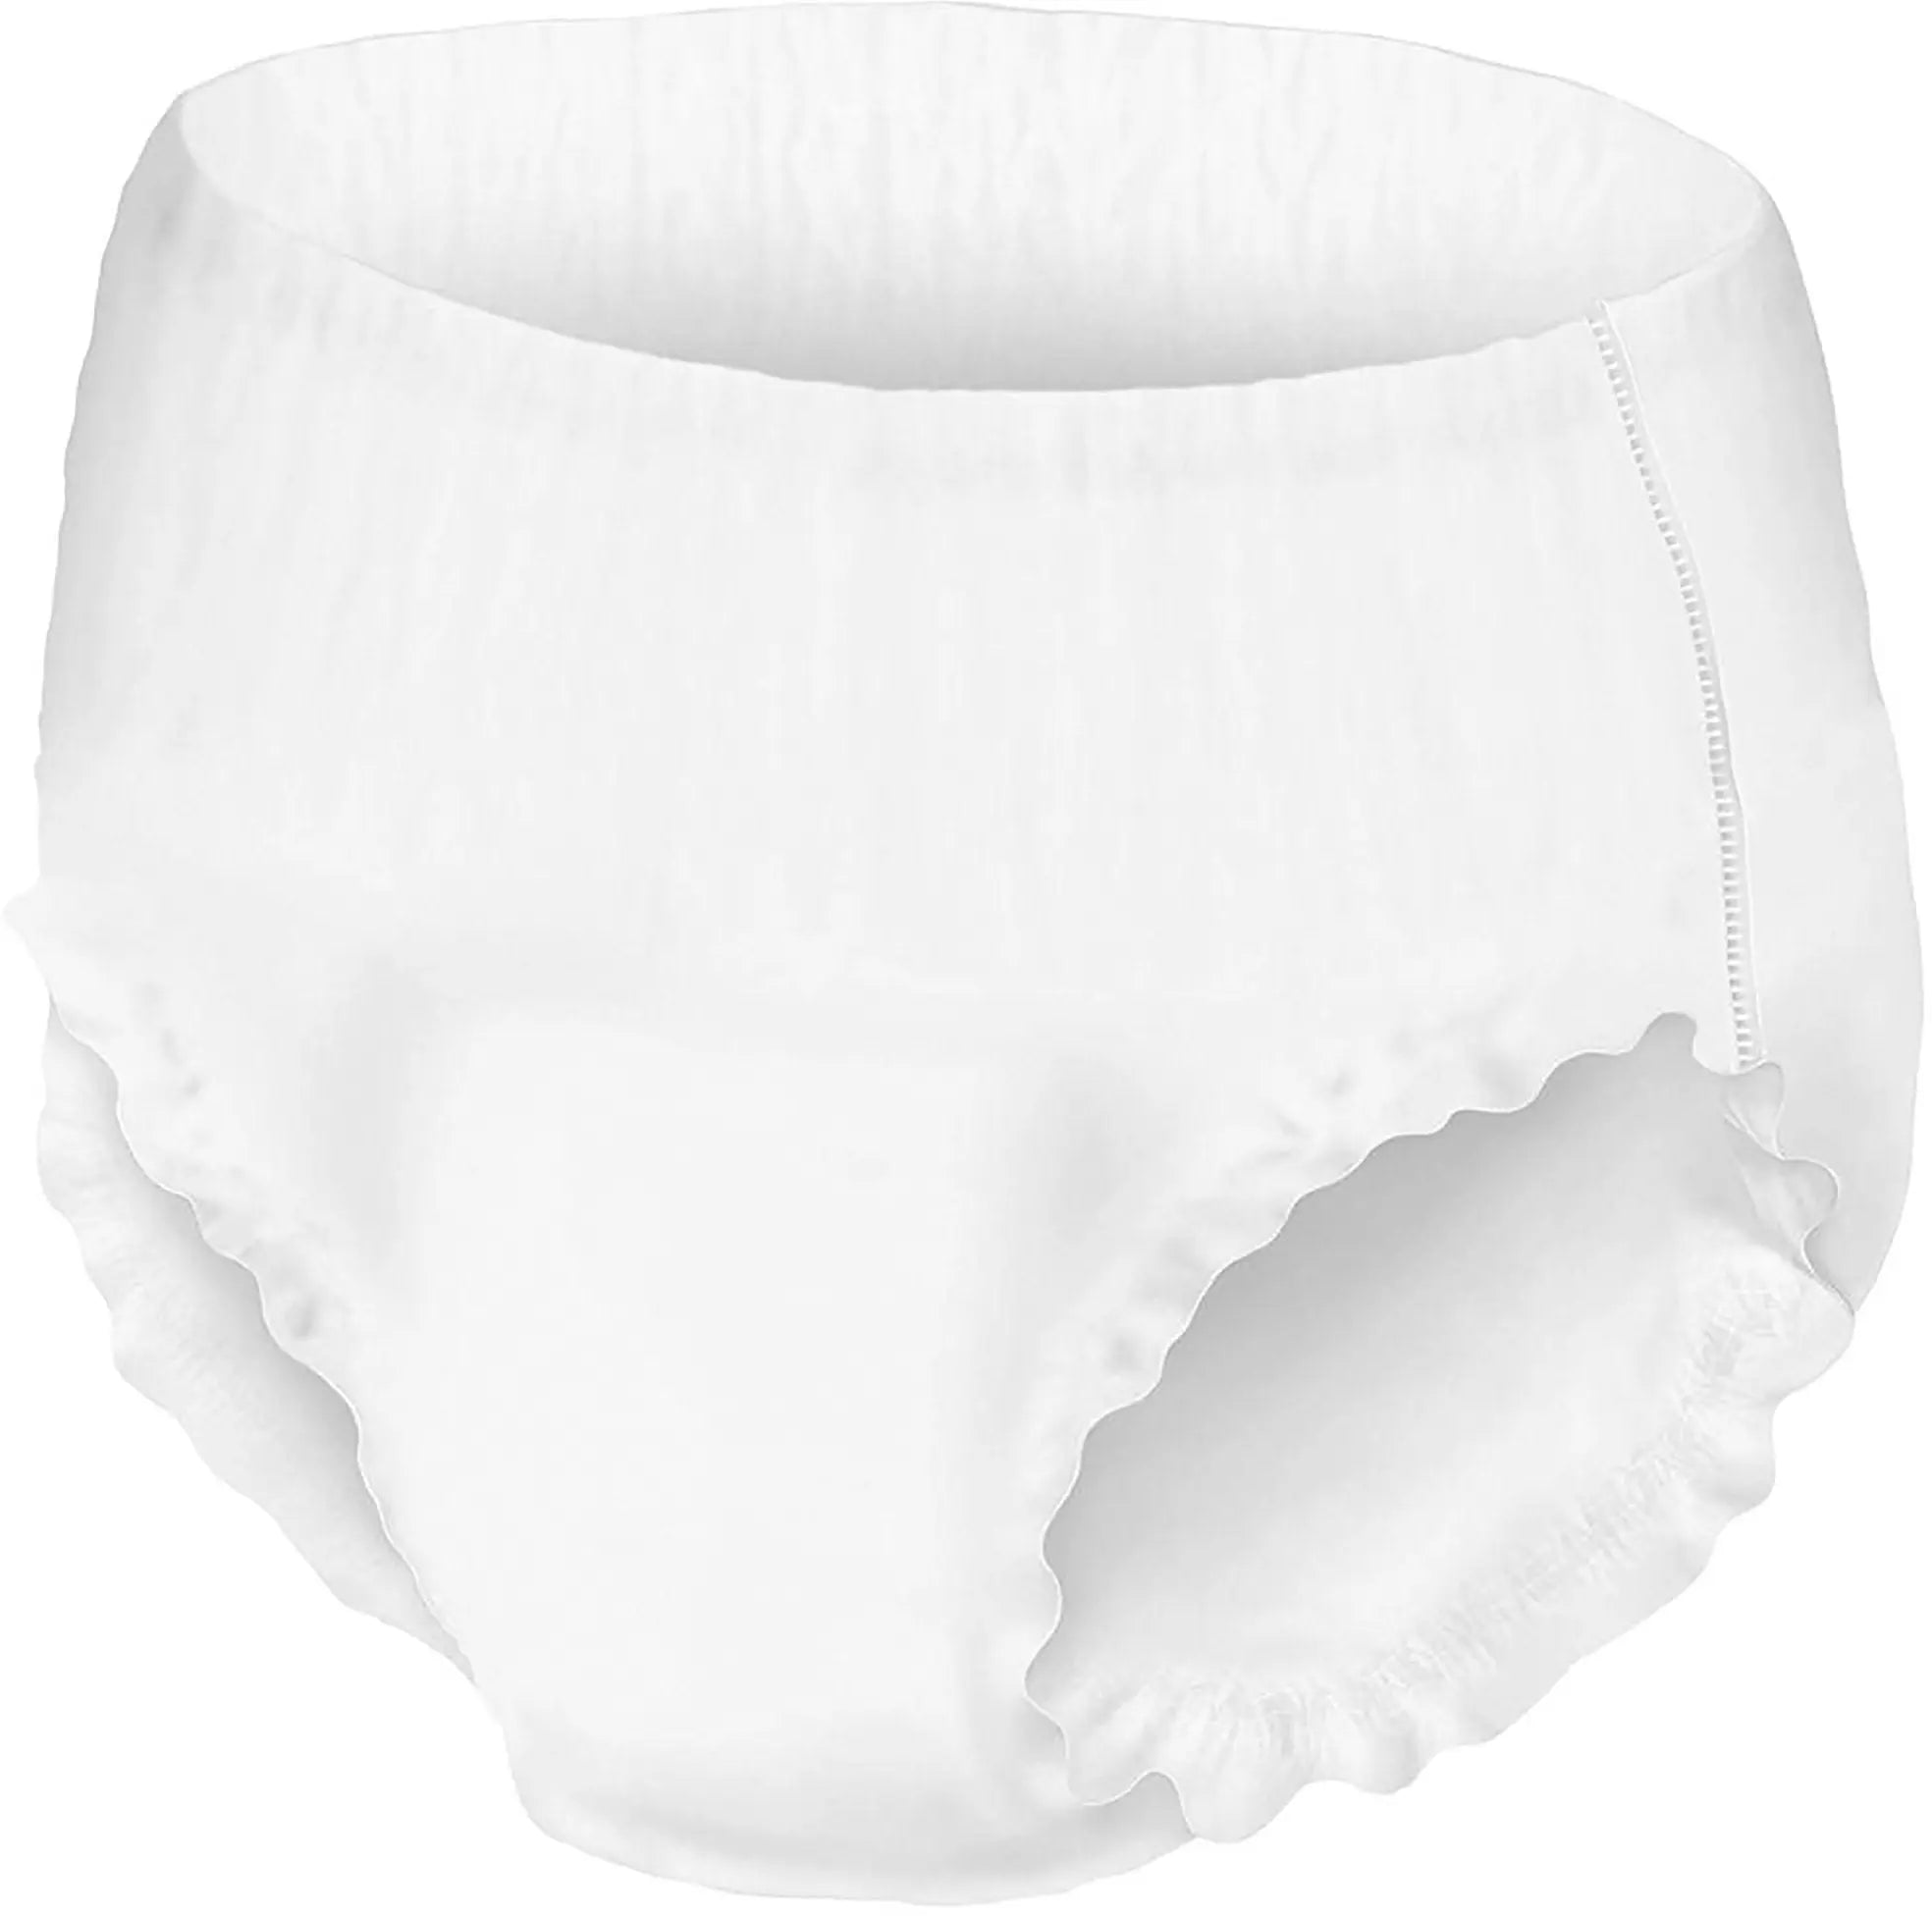 Postgrado  Procare protected underwear